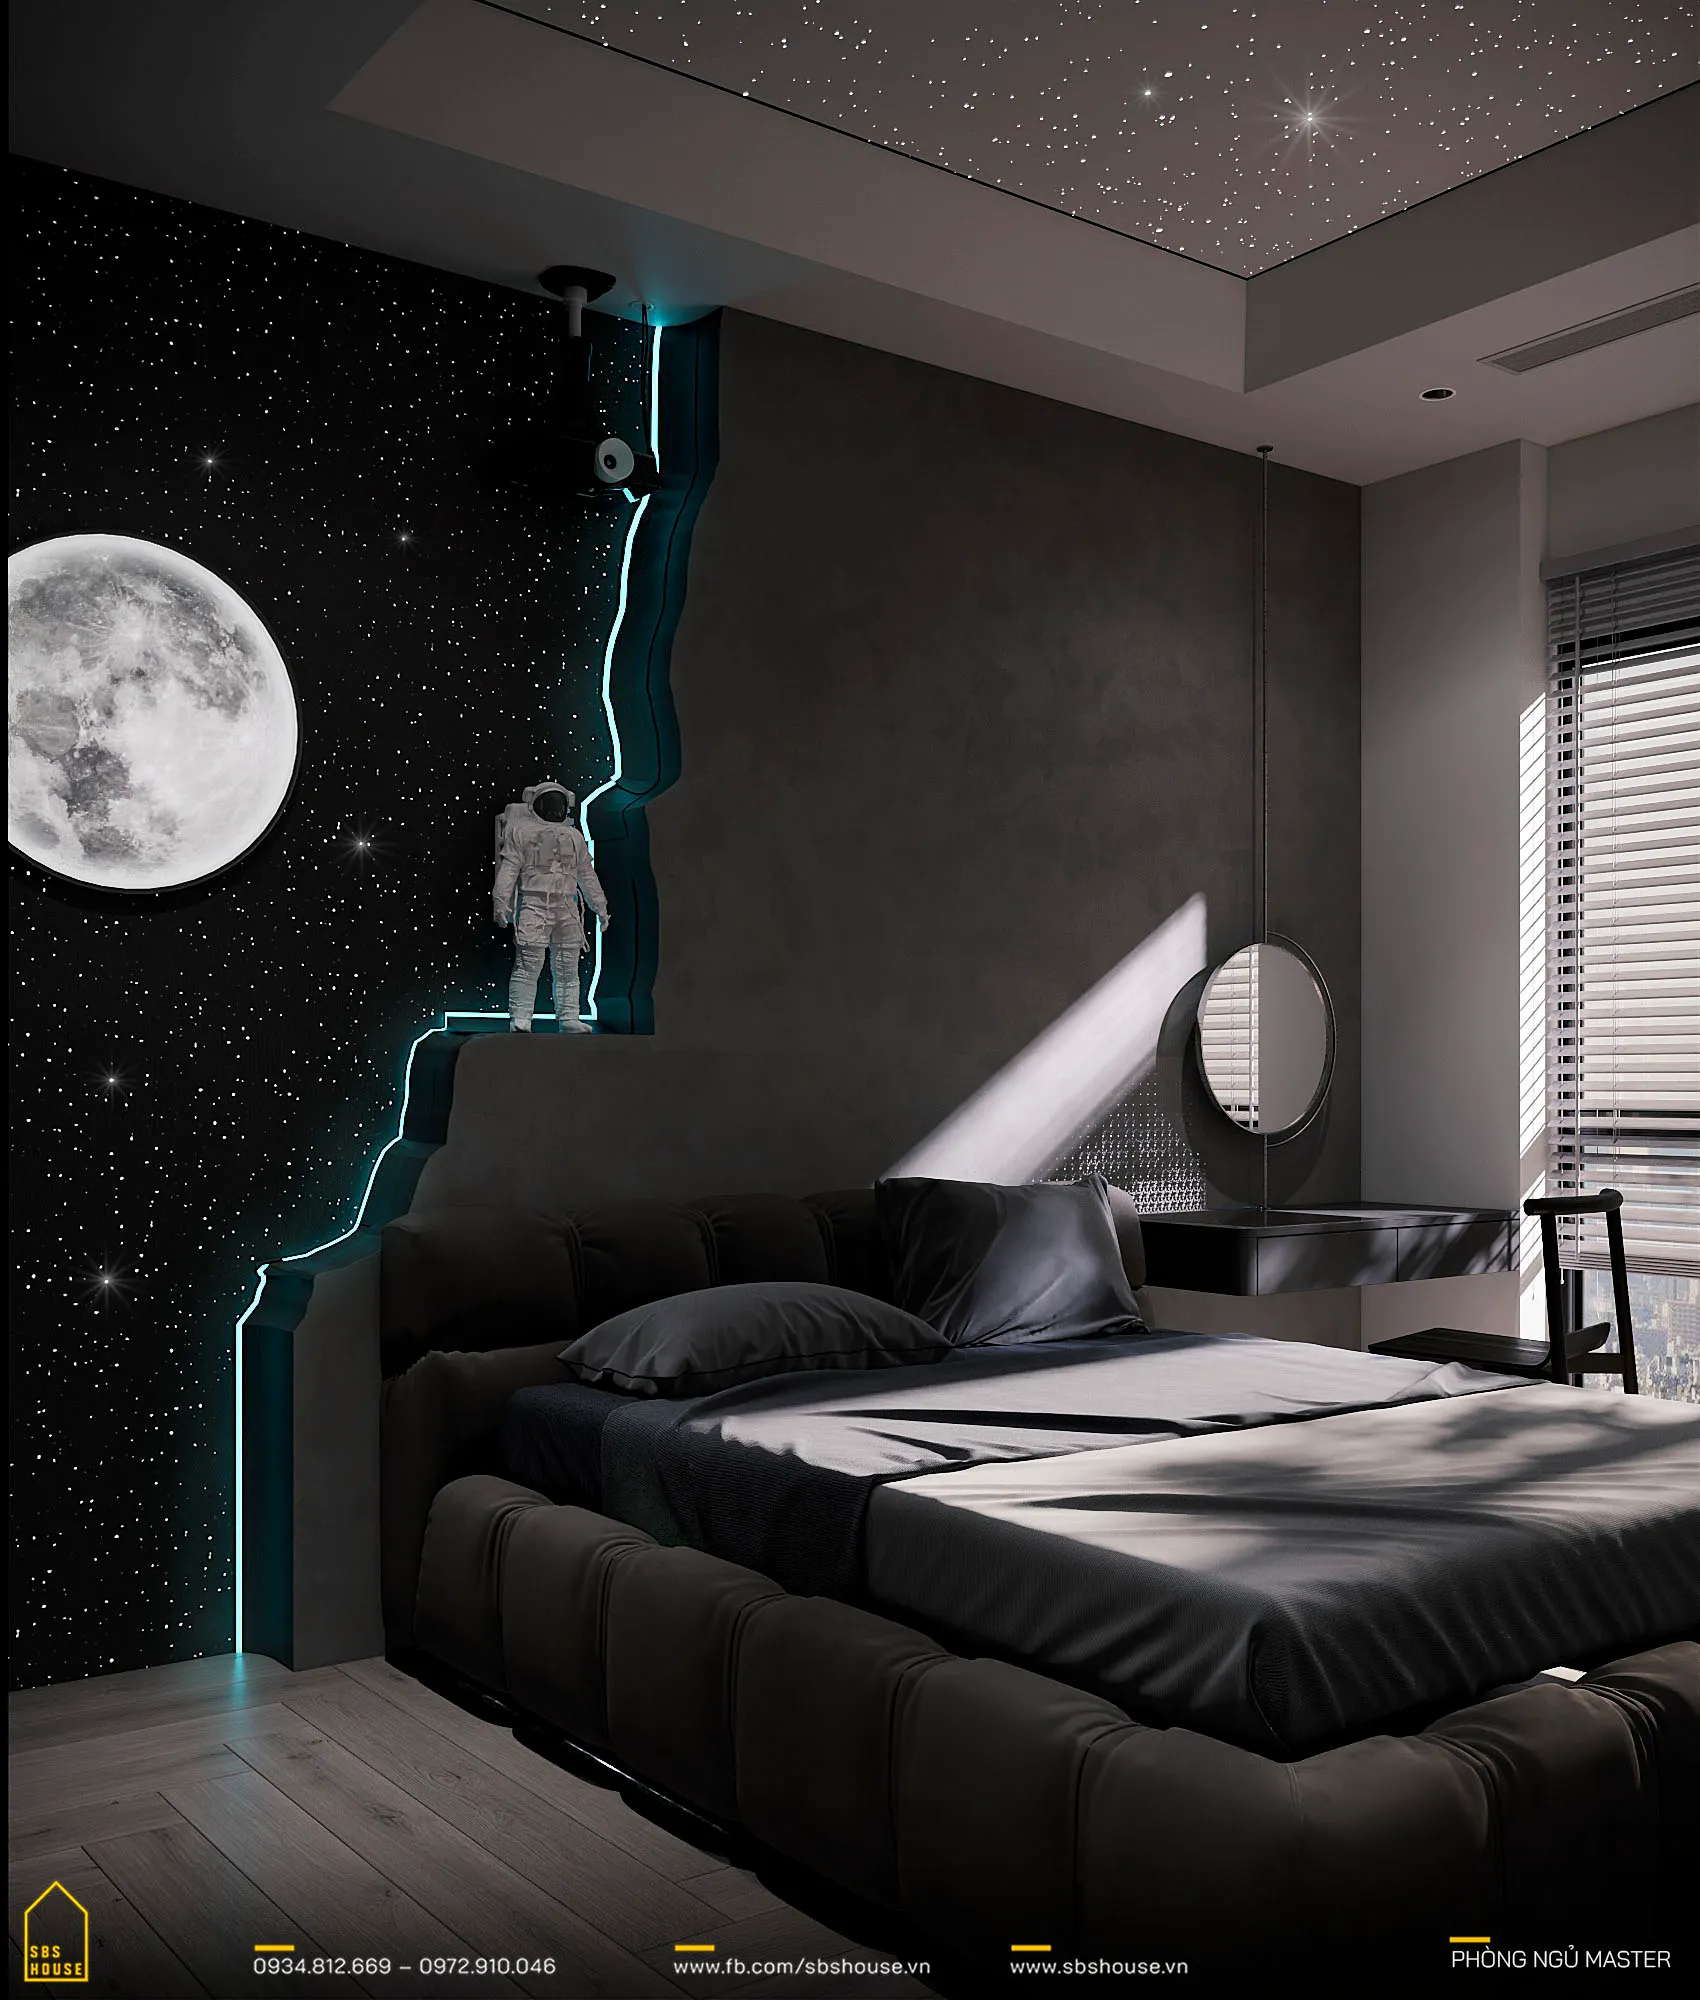 Trong dự án thiết kế nội thất của KTS Phan Hà, việc lấy cảm hứng từ vũ trụ cho phòng ngủ master không chỉ là một sự đổi mới trong thiết kế mà còn thể hiện sự sáng tạo vô hạn từ kiến trúc sư. 